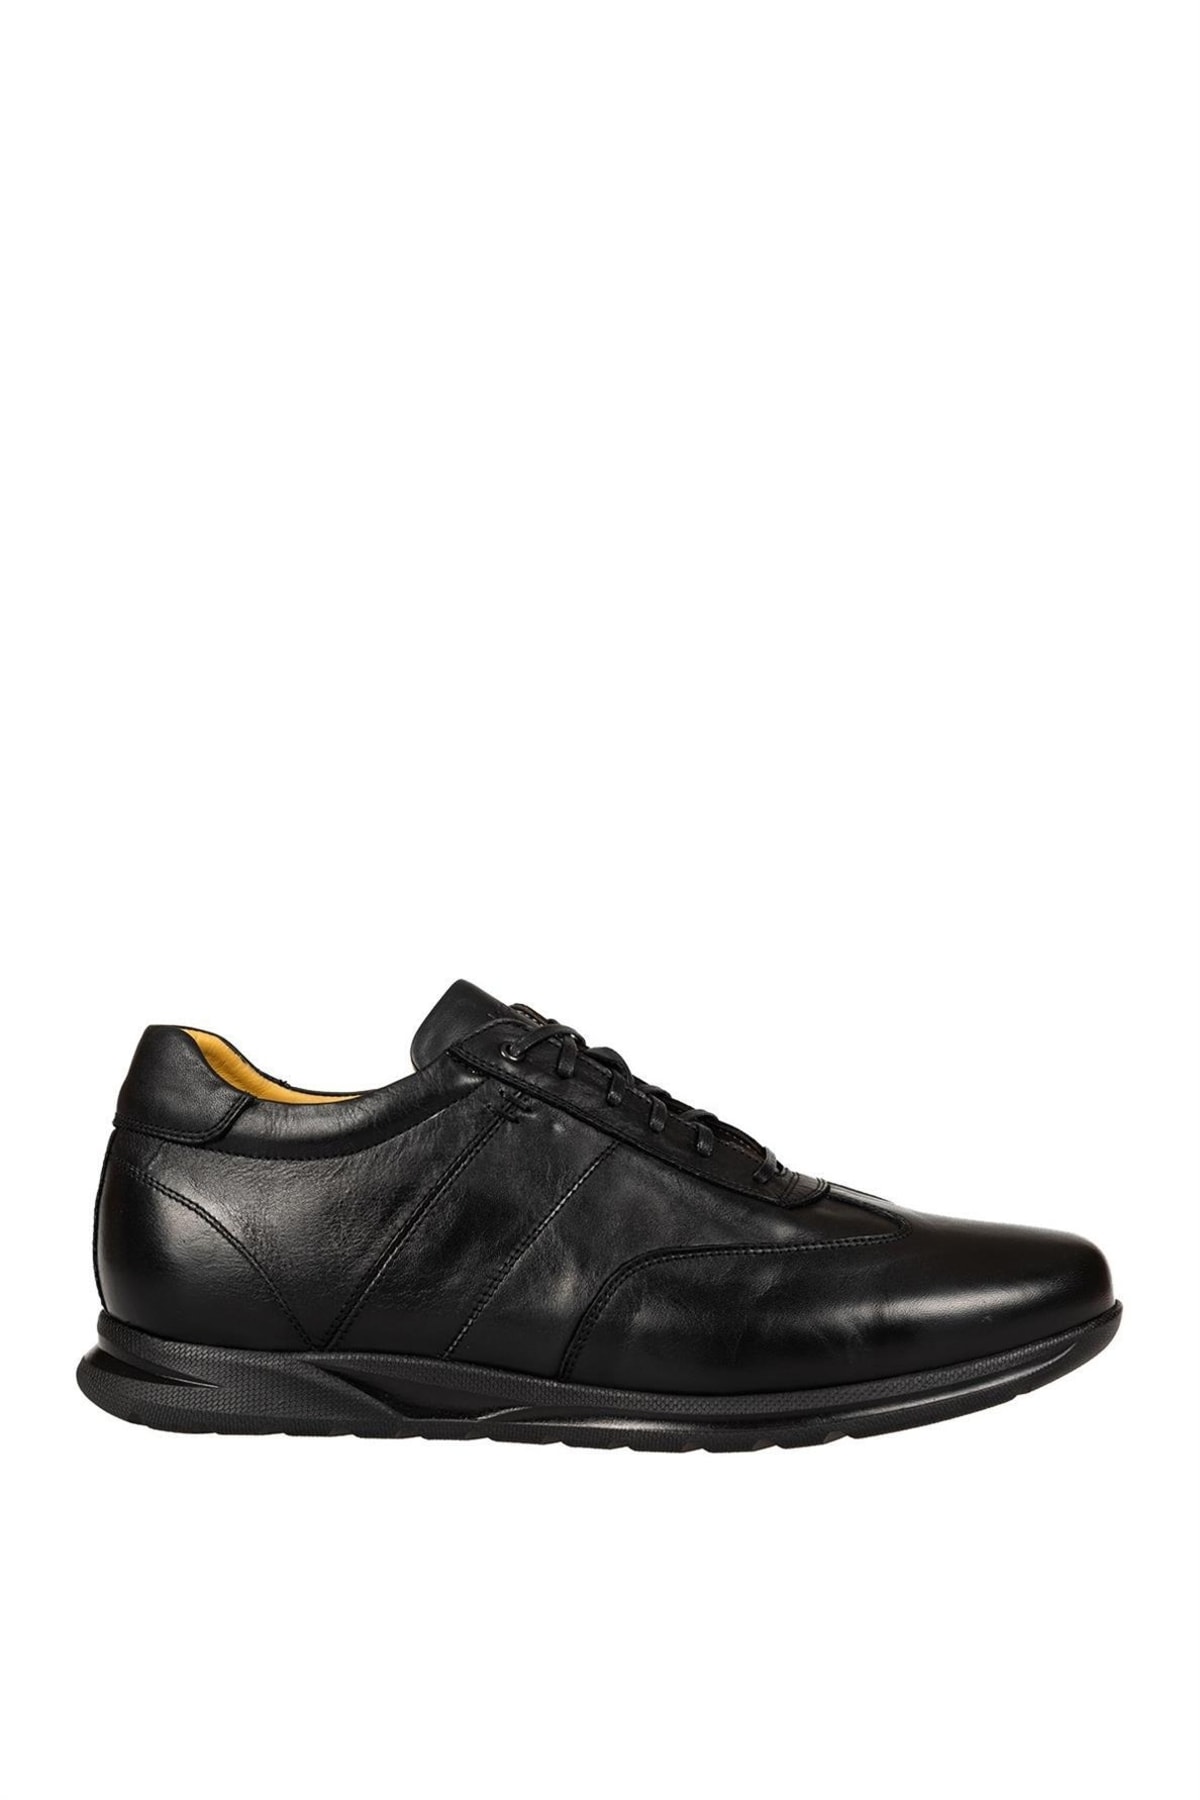 Dr.Flexer 259501 Hakiki Deri Erkek Büyük Numara Comfort Ayakkabı Siyah